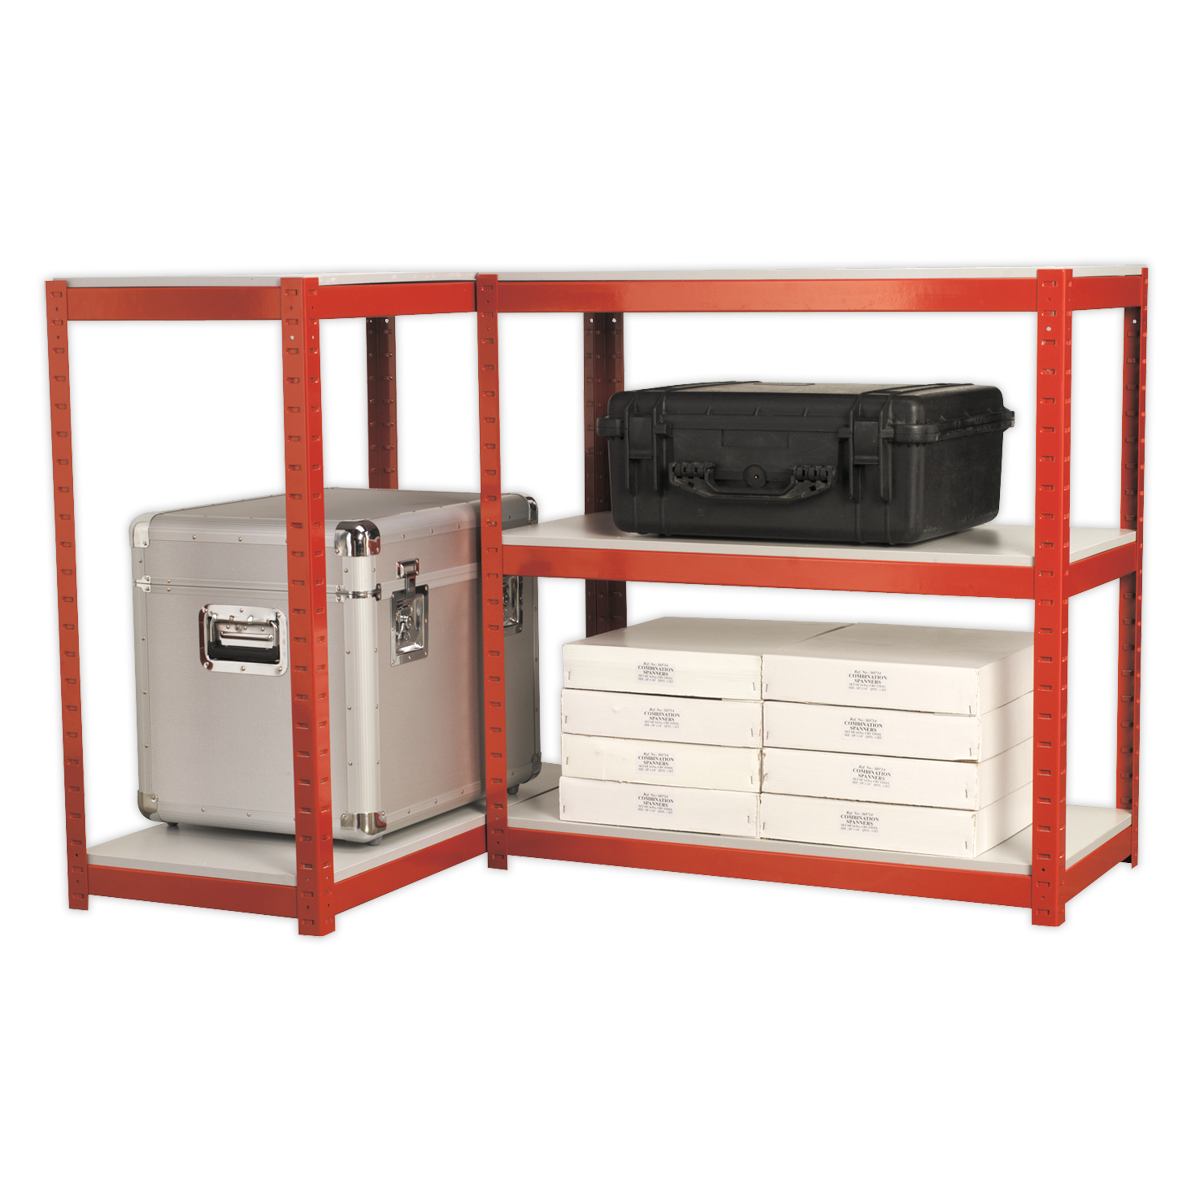 Racking Unit with 5 Shelves 500kg Capacity Per Level - AP6500 - Farming Parts